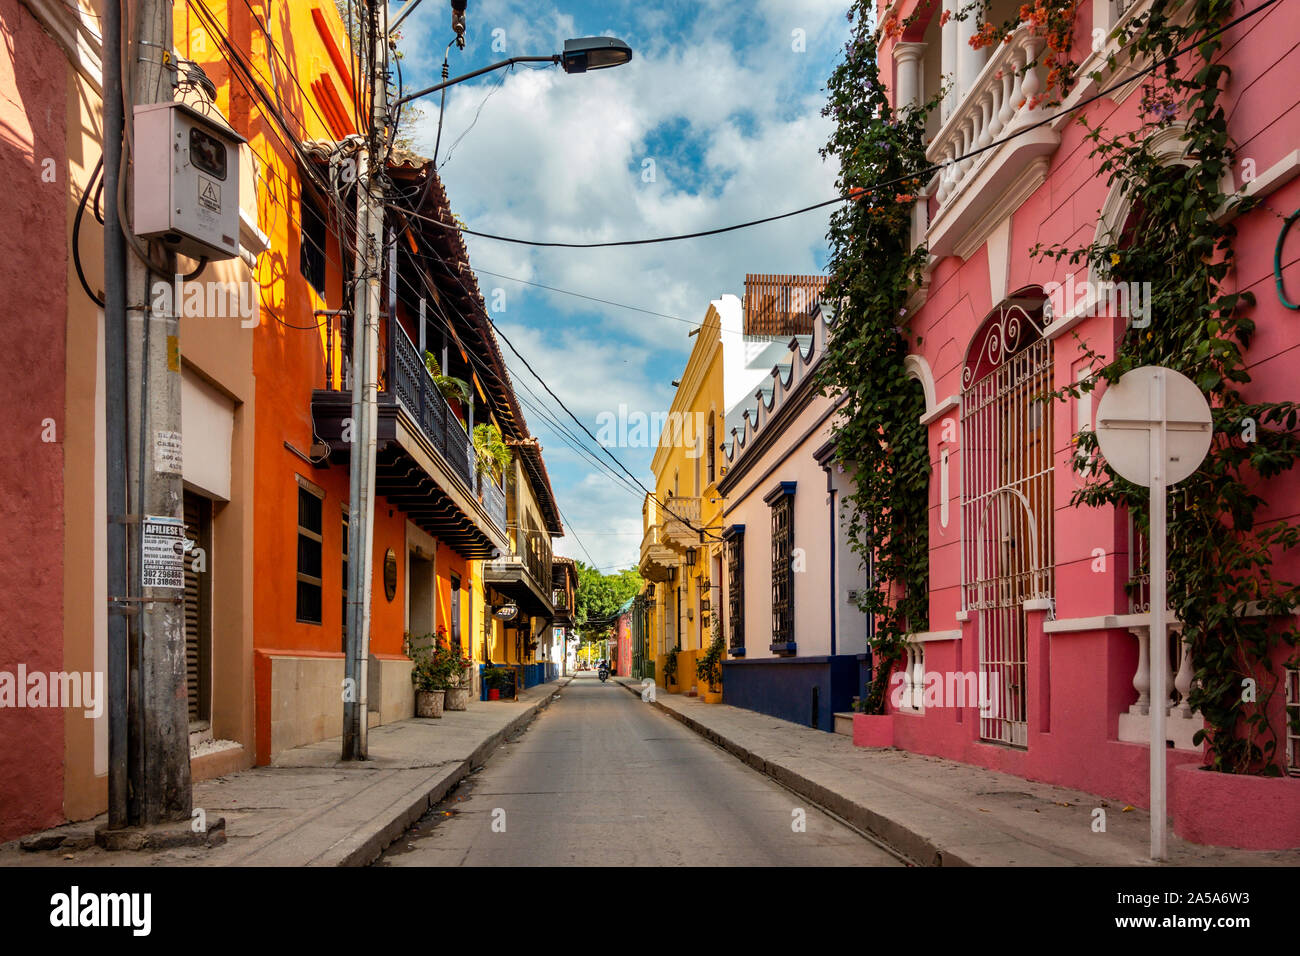 Farbenfrohe Gebäude in einer ruhigen Seitenstraße in der Altstadt von Santa Marta in Kolumbien Stockfoto